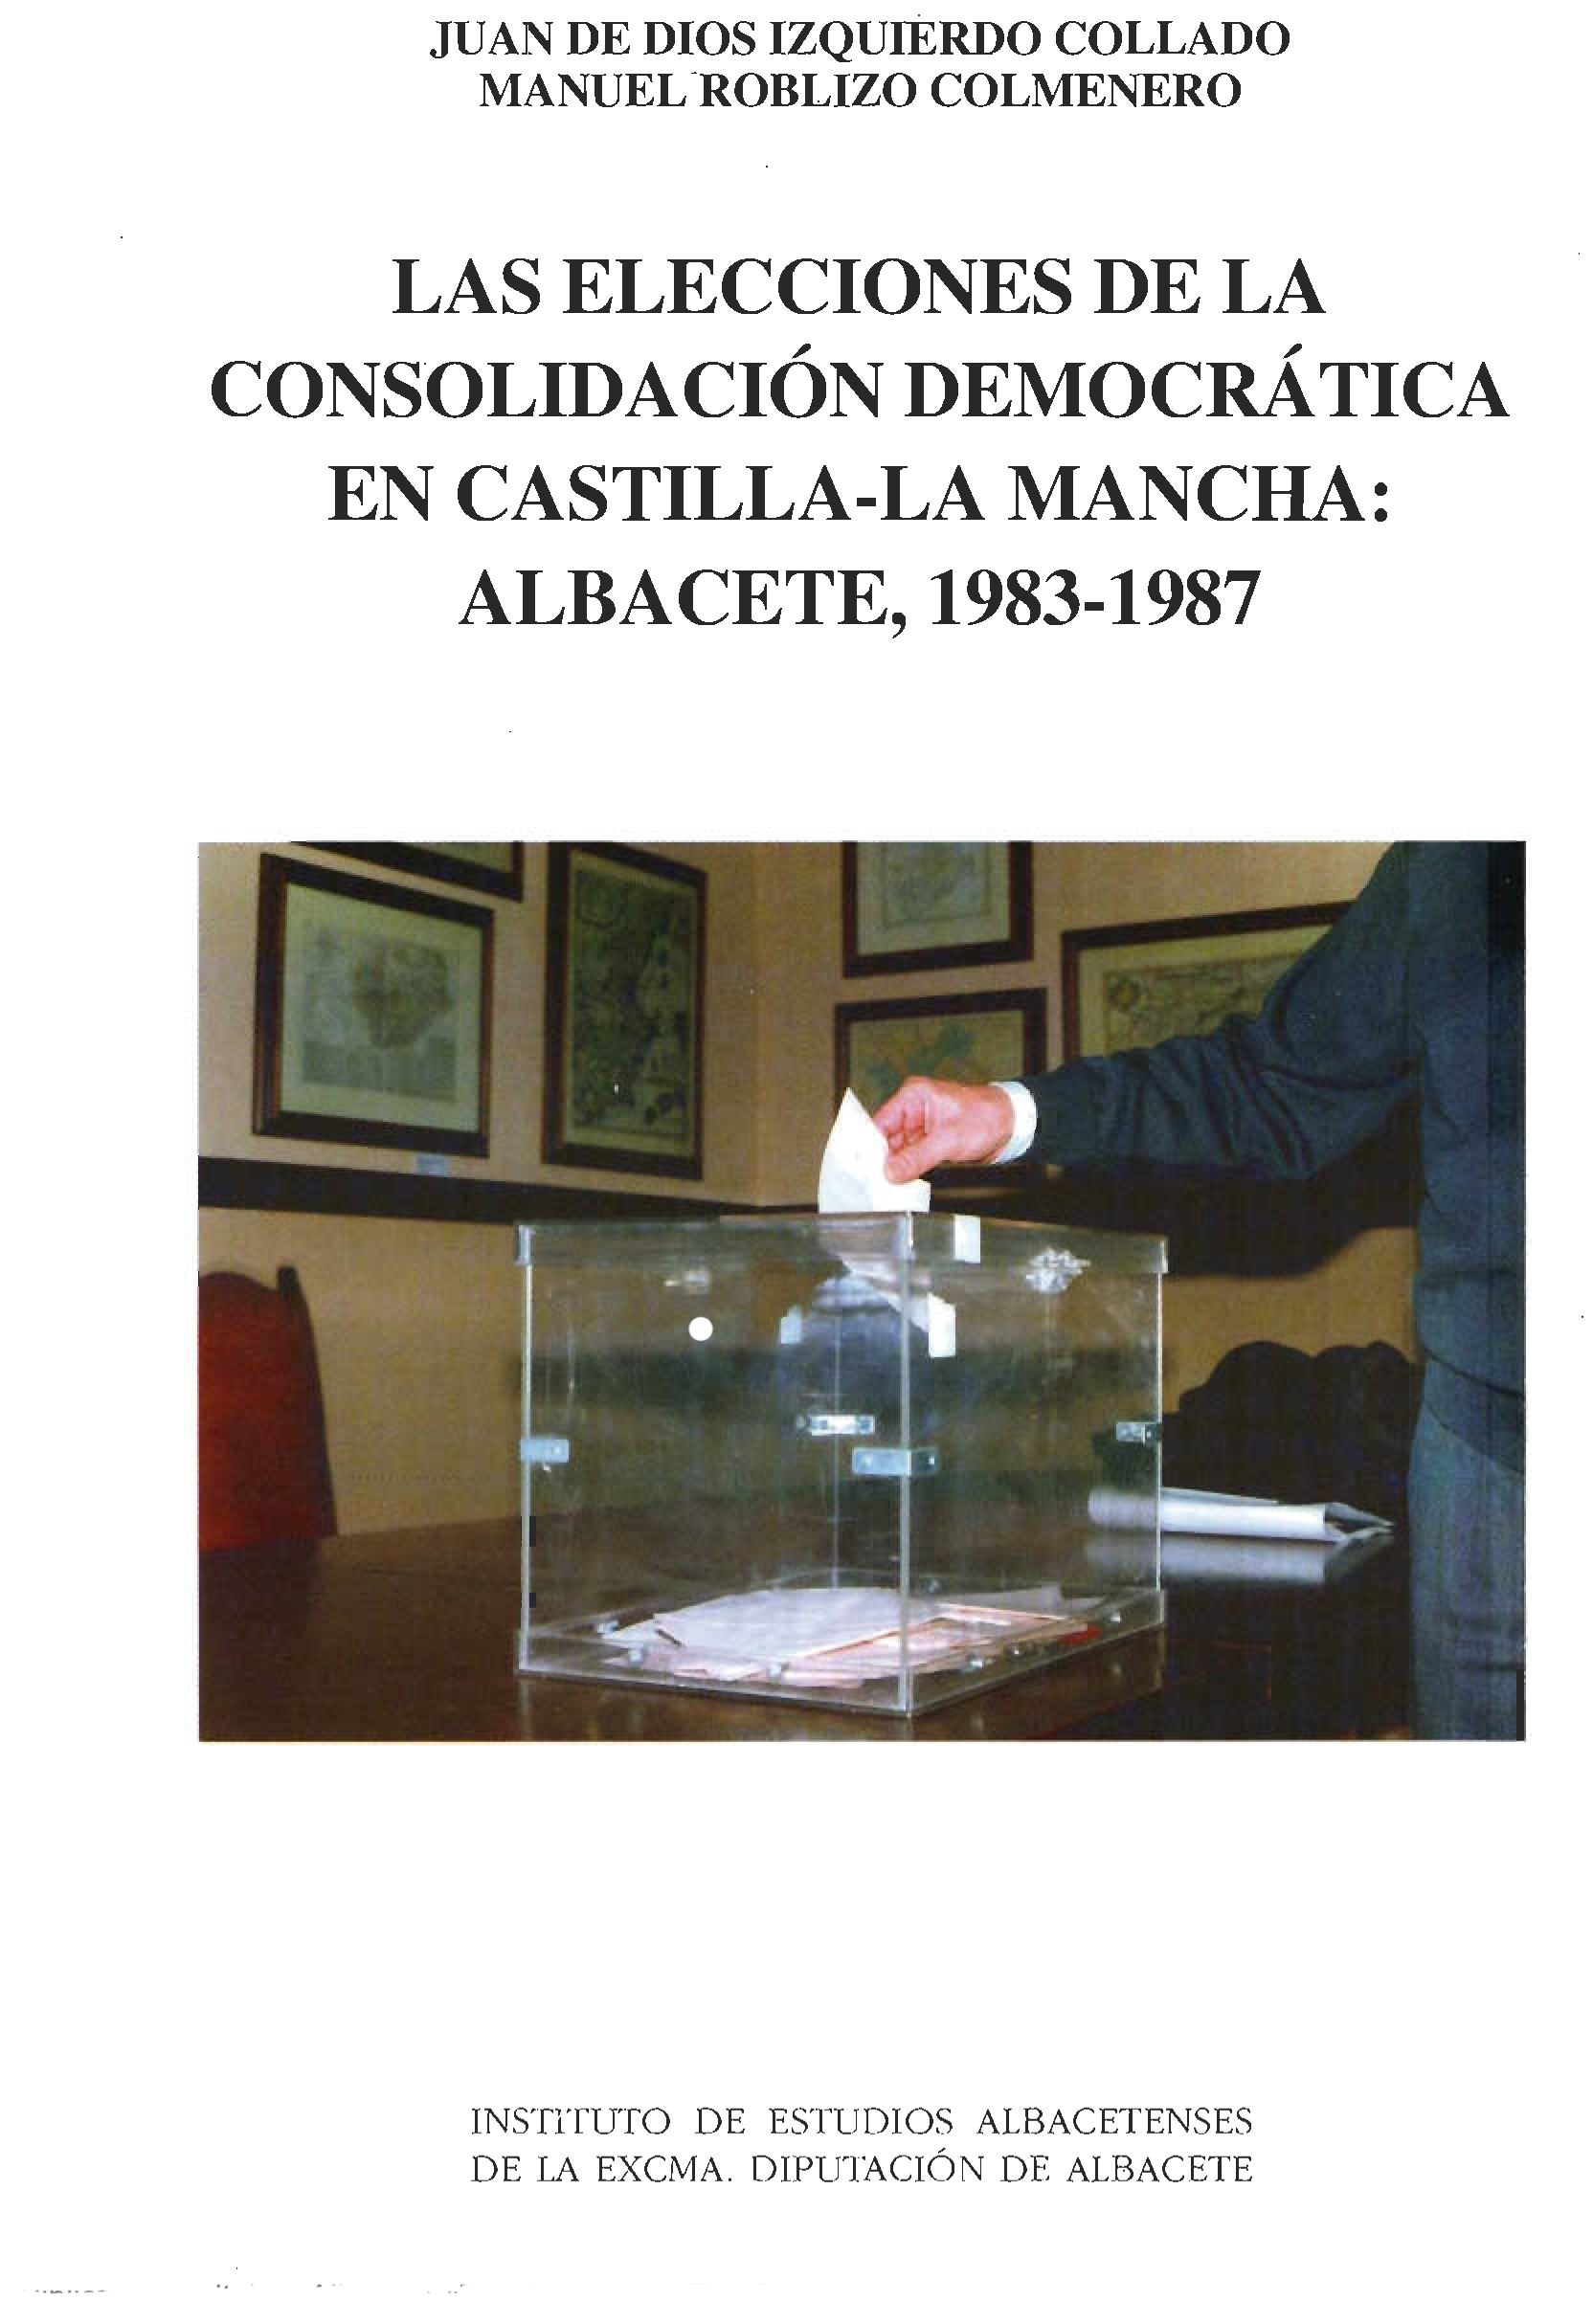 Imagen de portada del libro Las elecciones de la consolidación democrática en Castilla-La Mancha